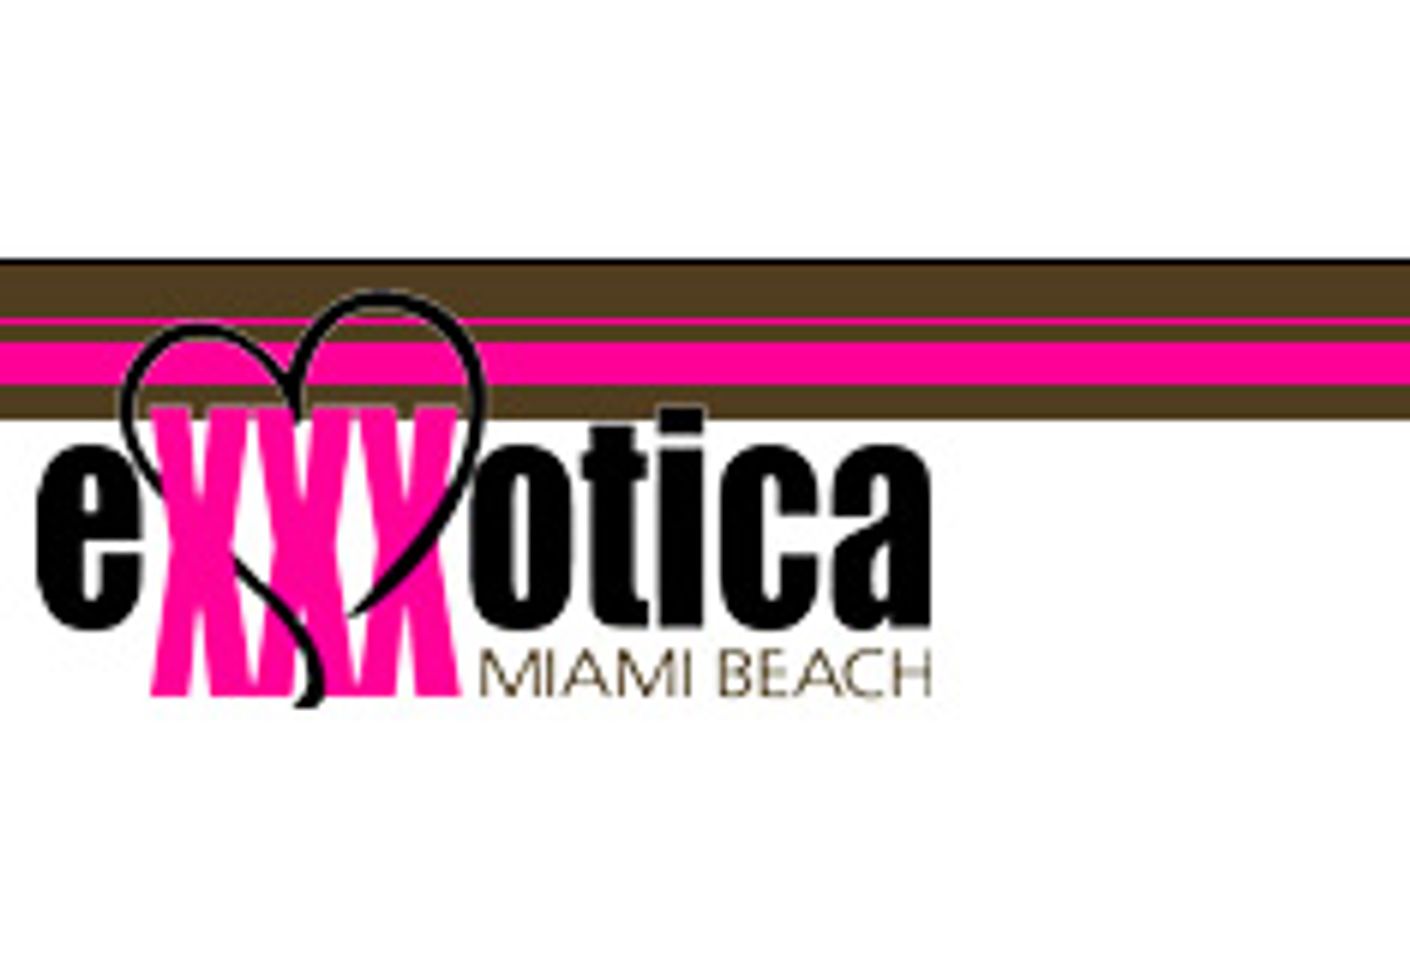 HotMovies to Sponsor eXXXotica Miami Beach 2007